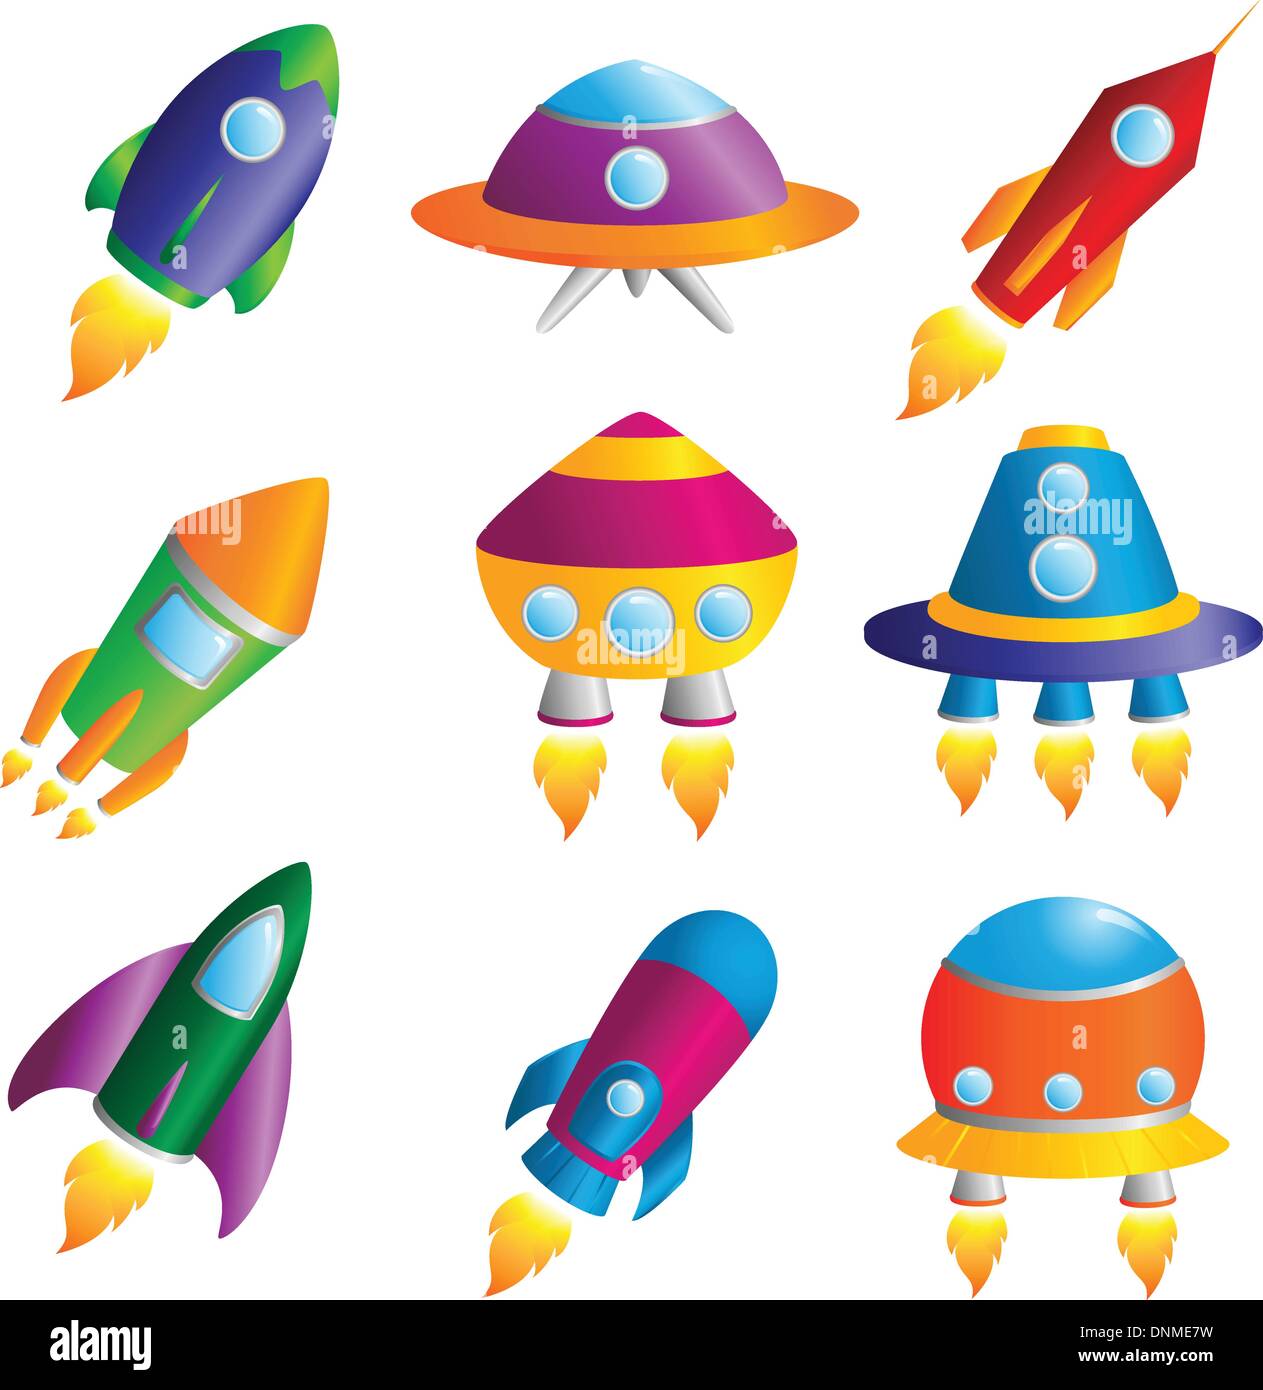 Un vecteur illustration d'une collection d'icônes de fusées colorées Illustration de Vecteur